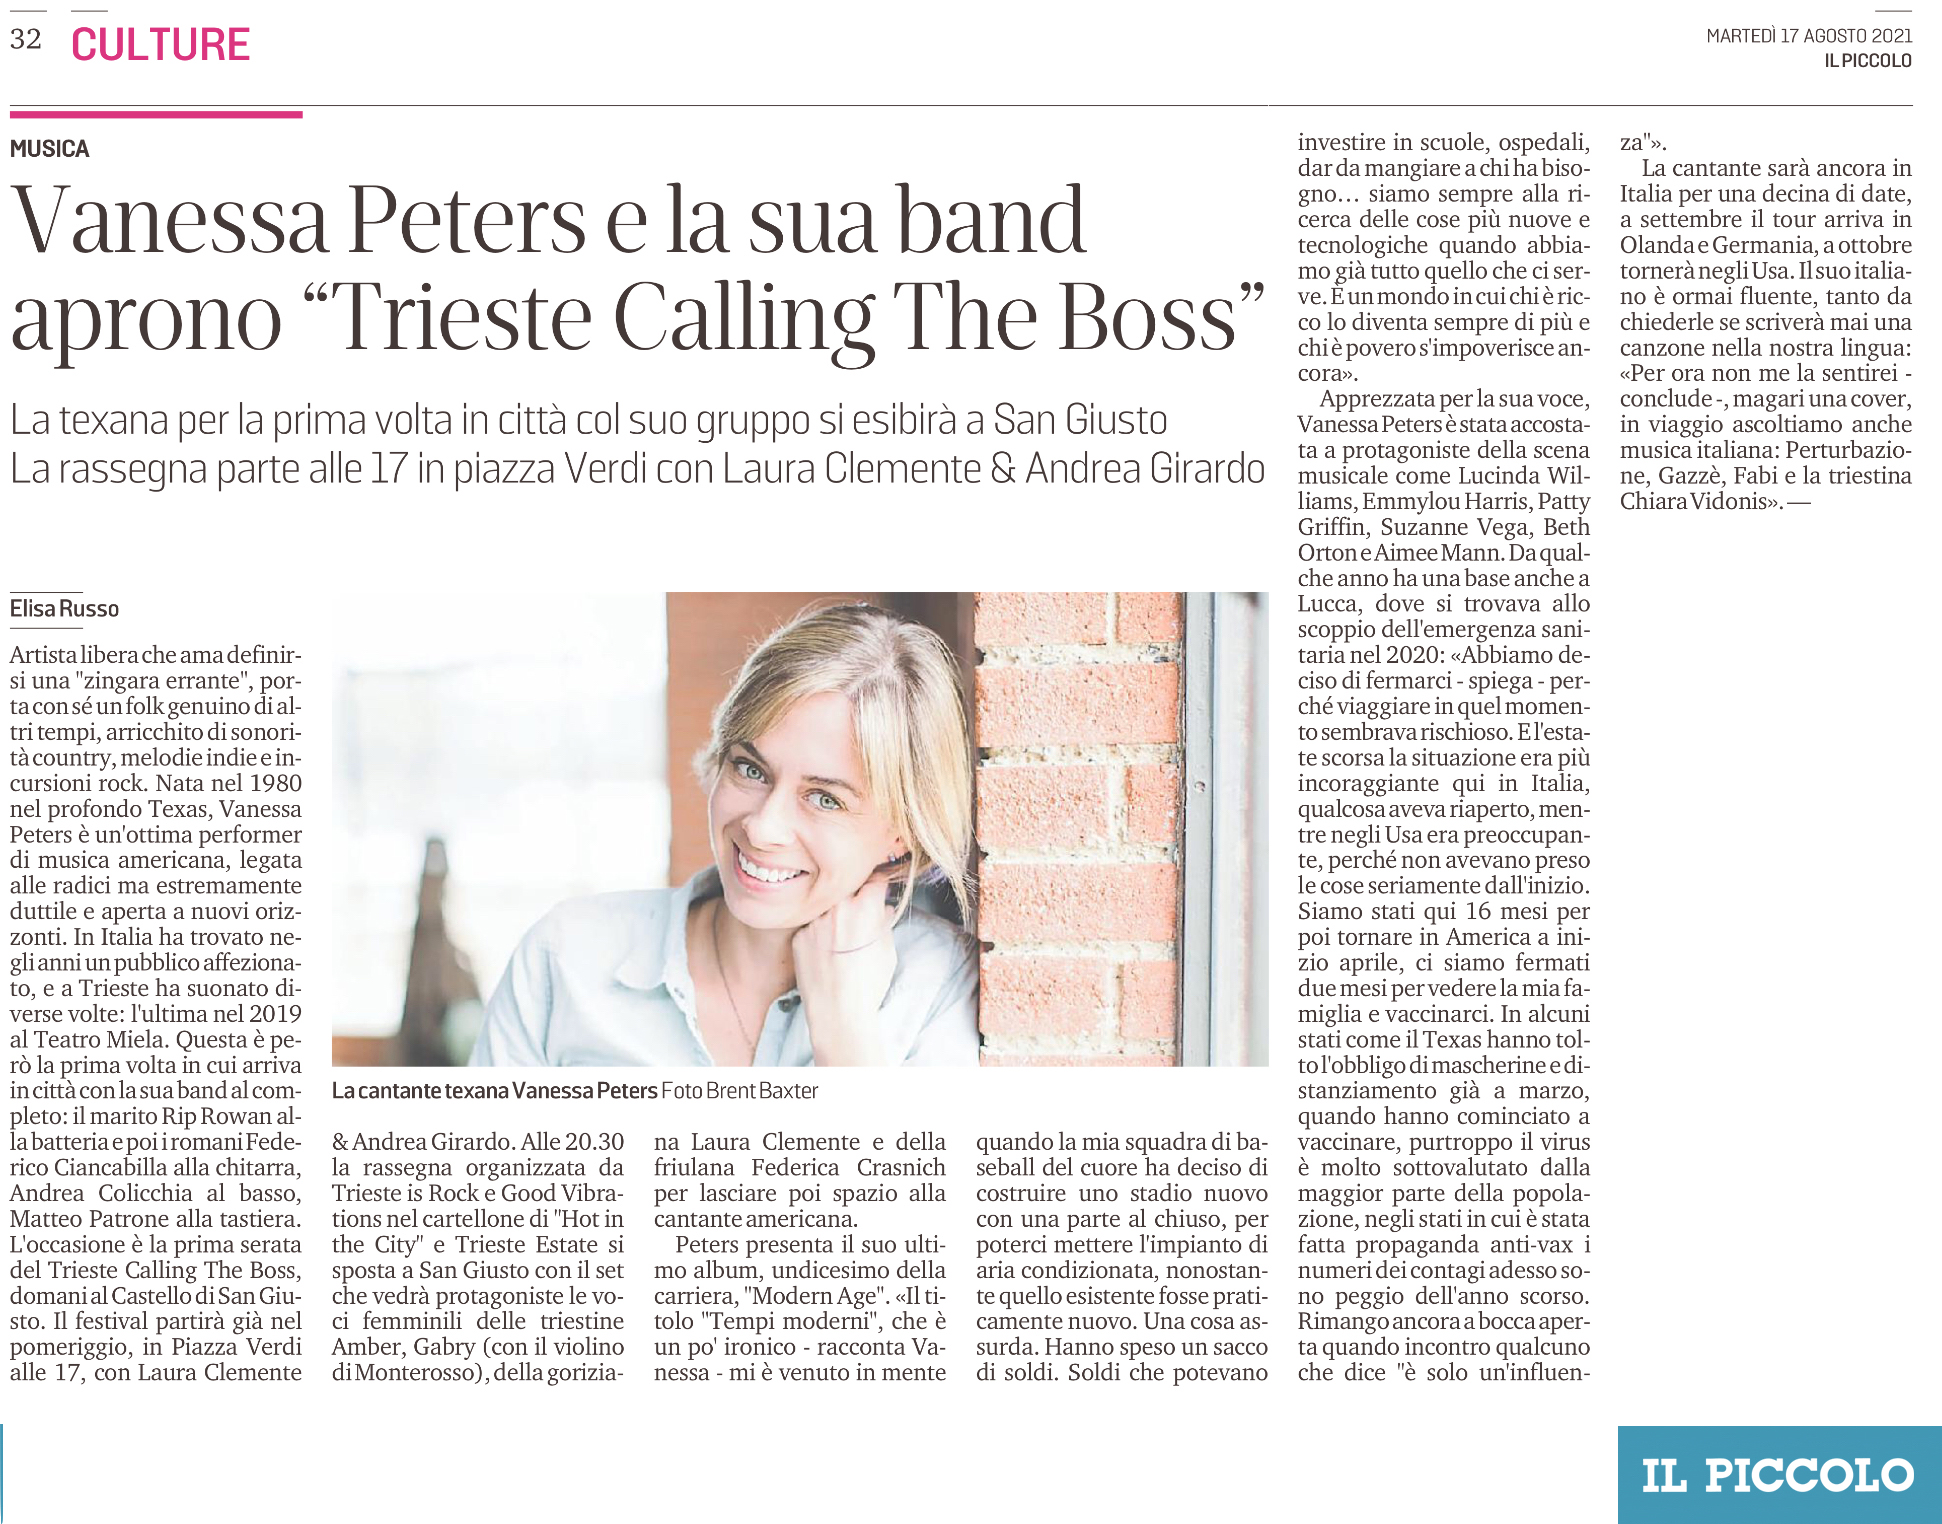 Vanessa Peters apre il “Calling the Boss” per HITC 2021